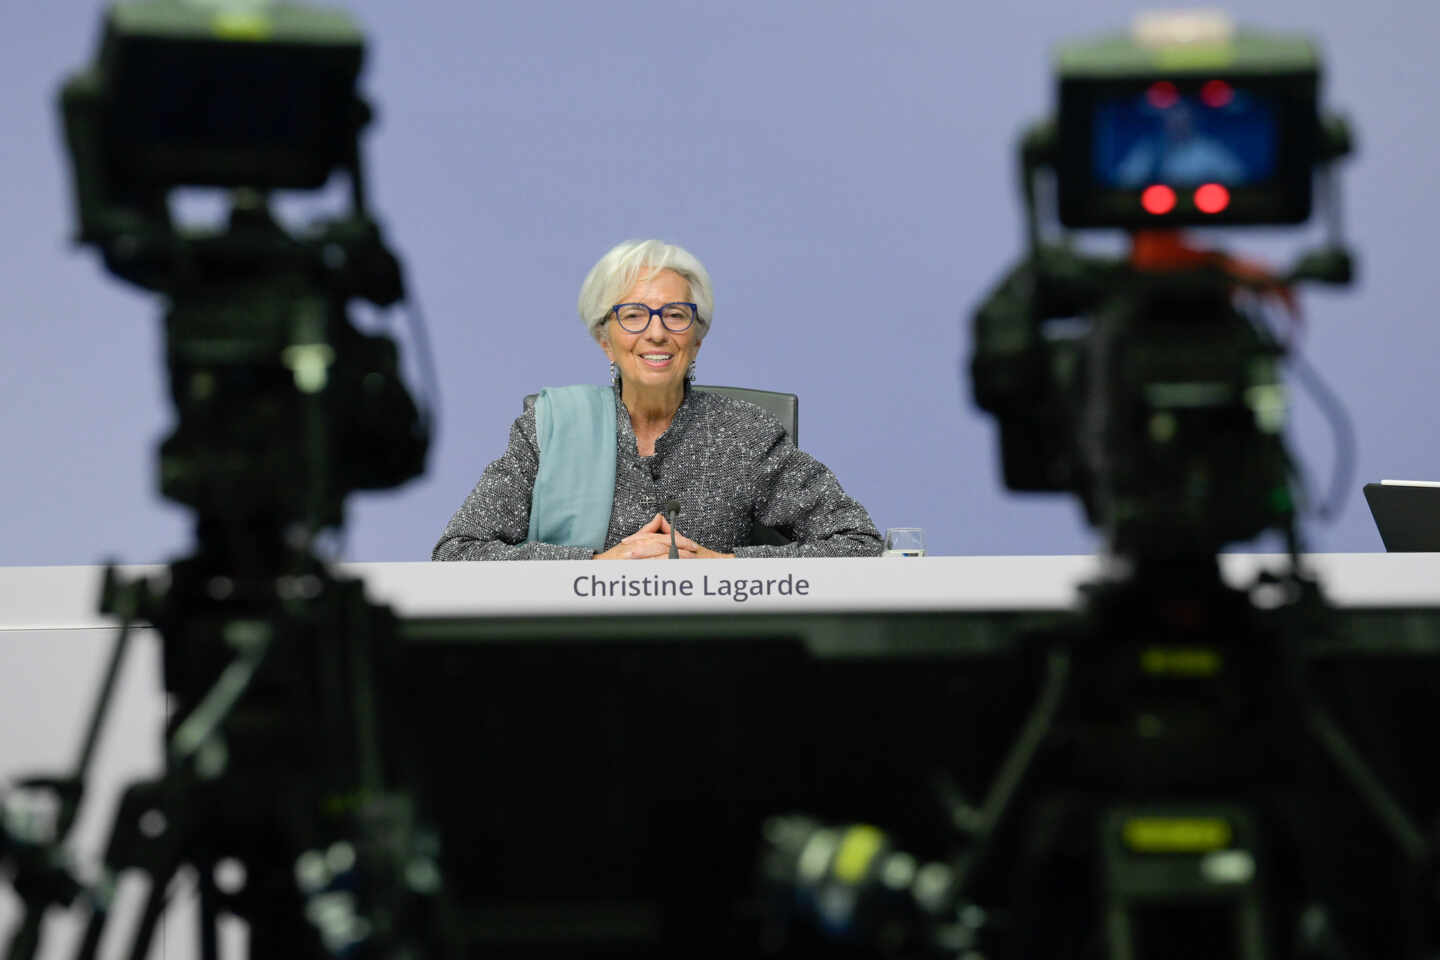 La presidenta del BCE, Christine Lagarde, en una rueda de prensa.